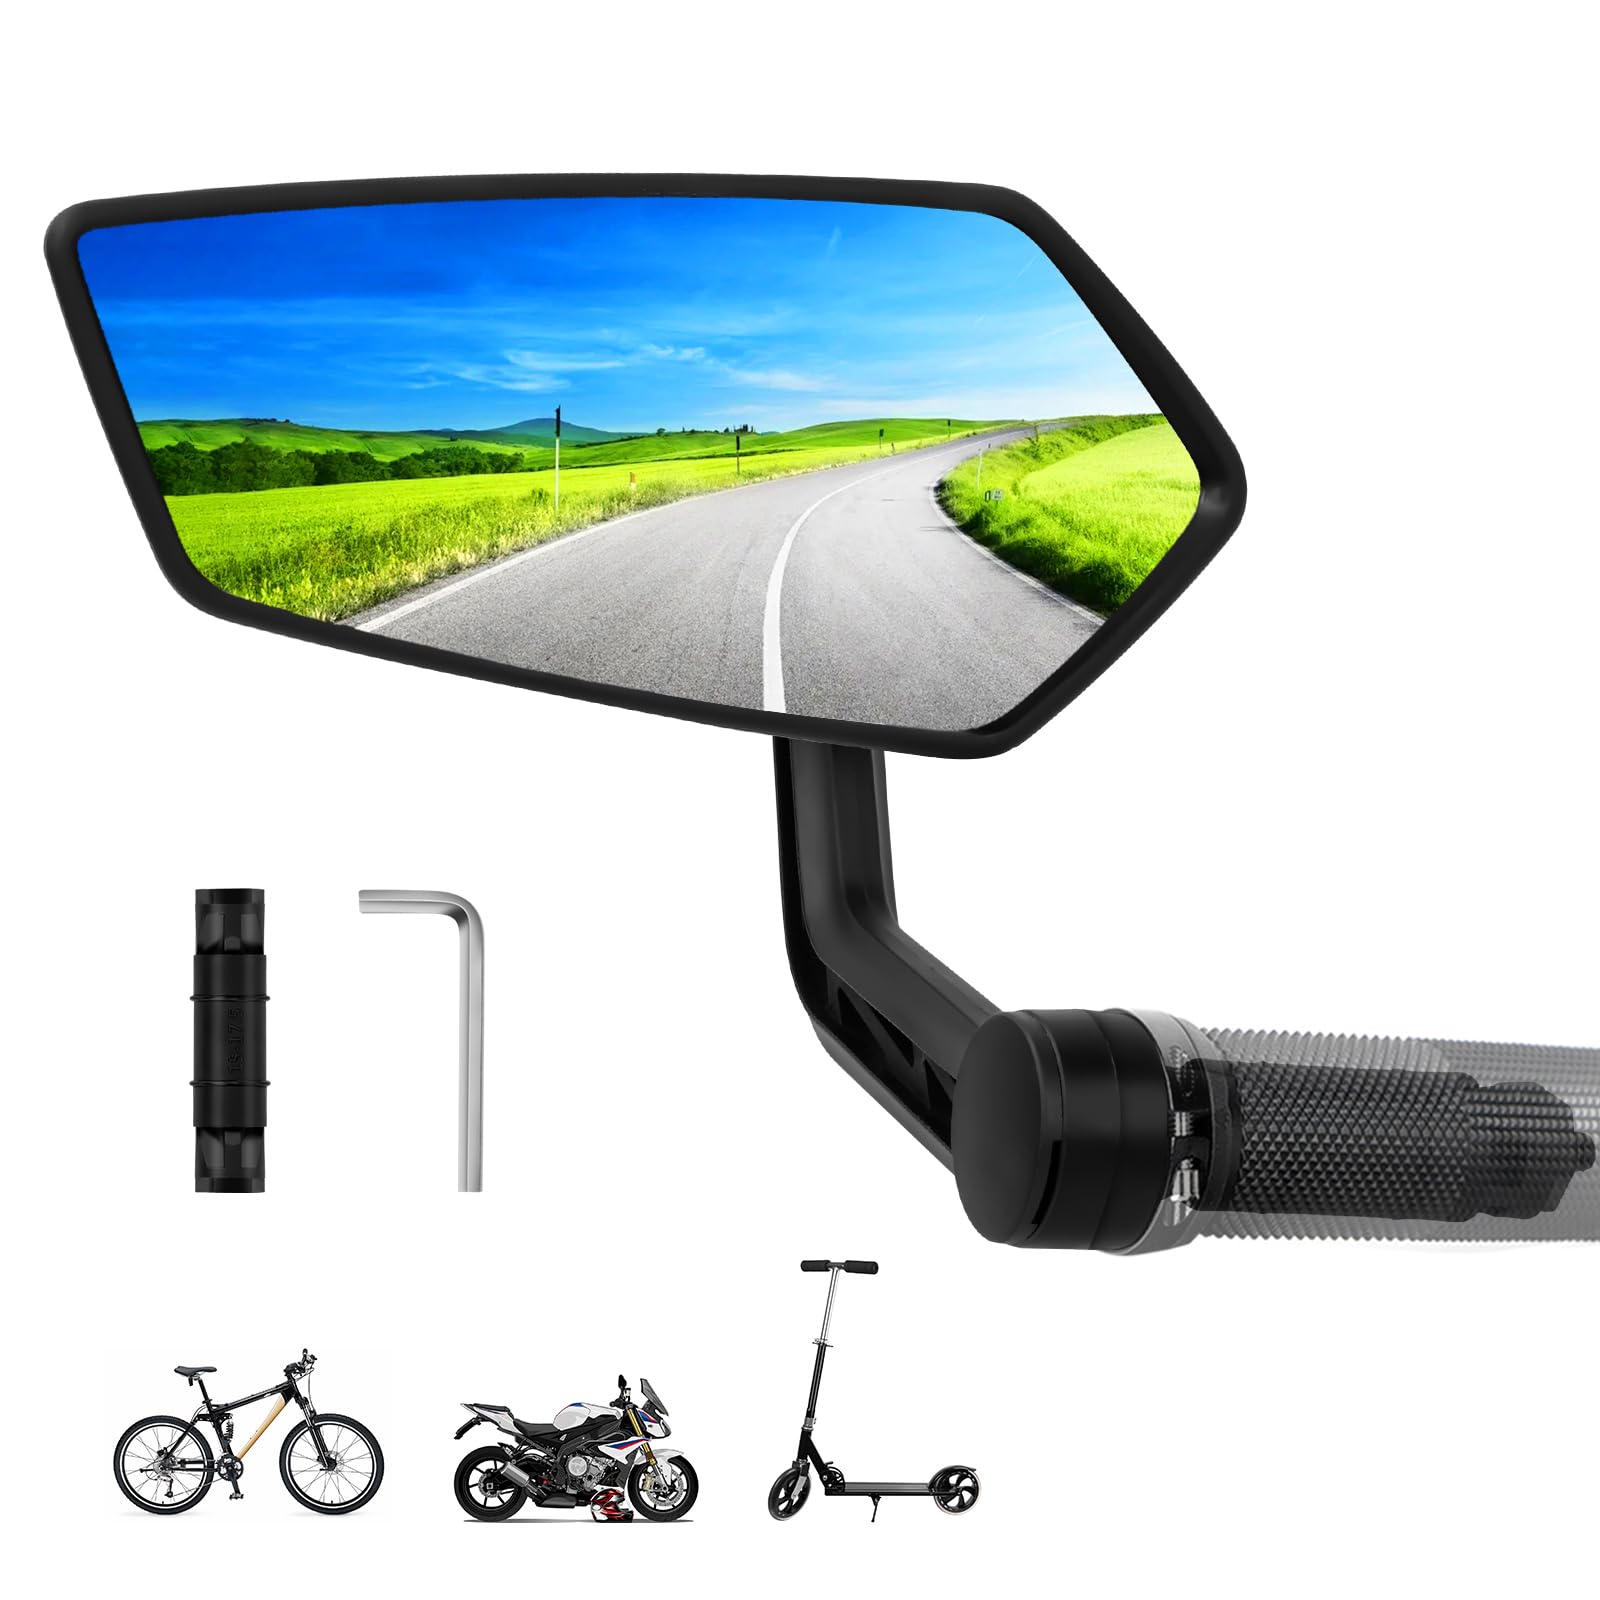 Fahrradspiegel für E-Bike Links, Fahrradspiegel für Lenker, Fahradspiegel Lenker Links Ebike, HD Schlagfestes Echtglas Spiegelfläche, für E-Bike Universal 15-20mm (Links Lenkerende) von LURICO